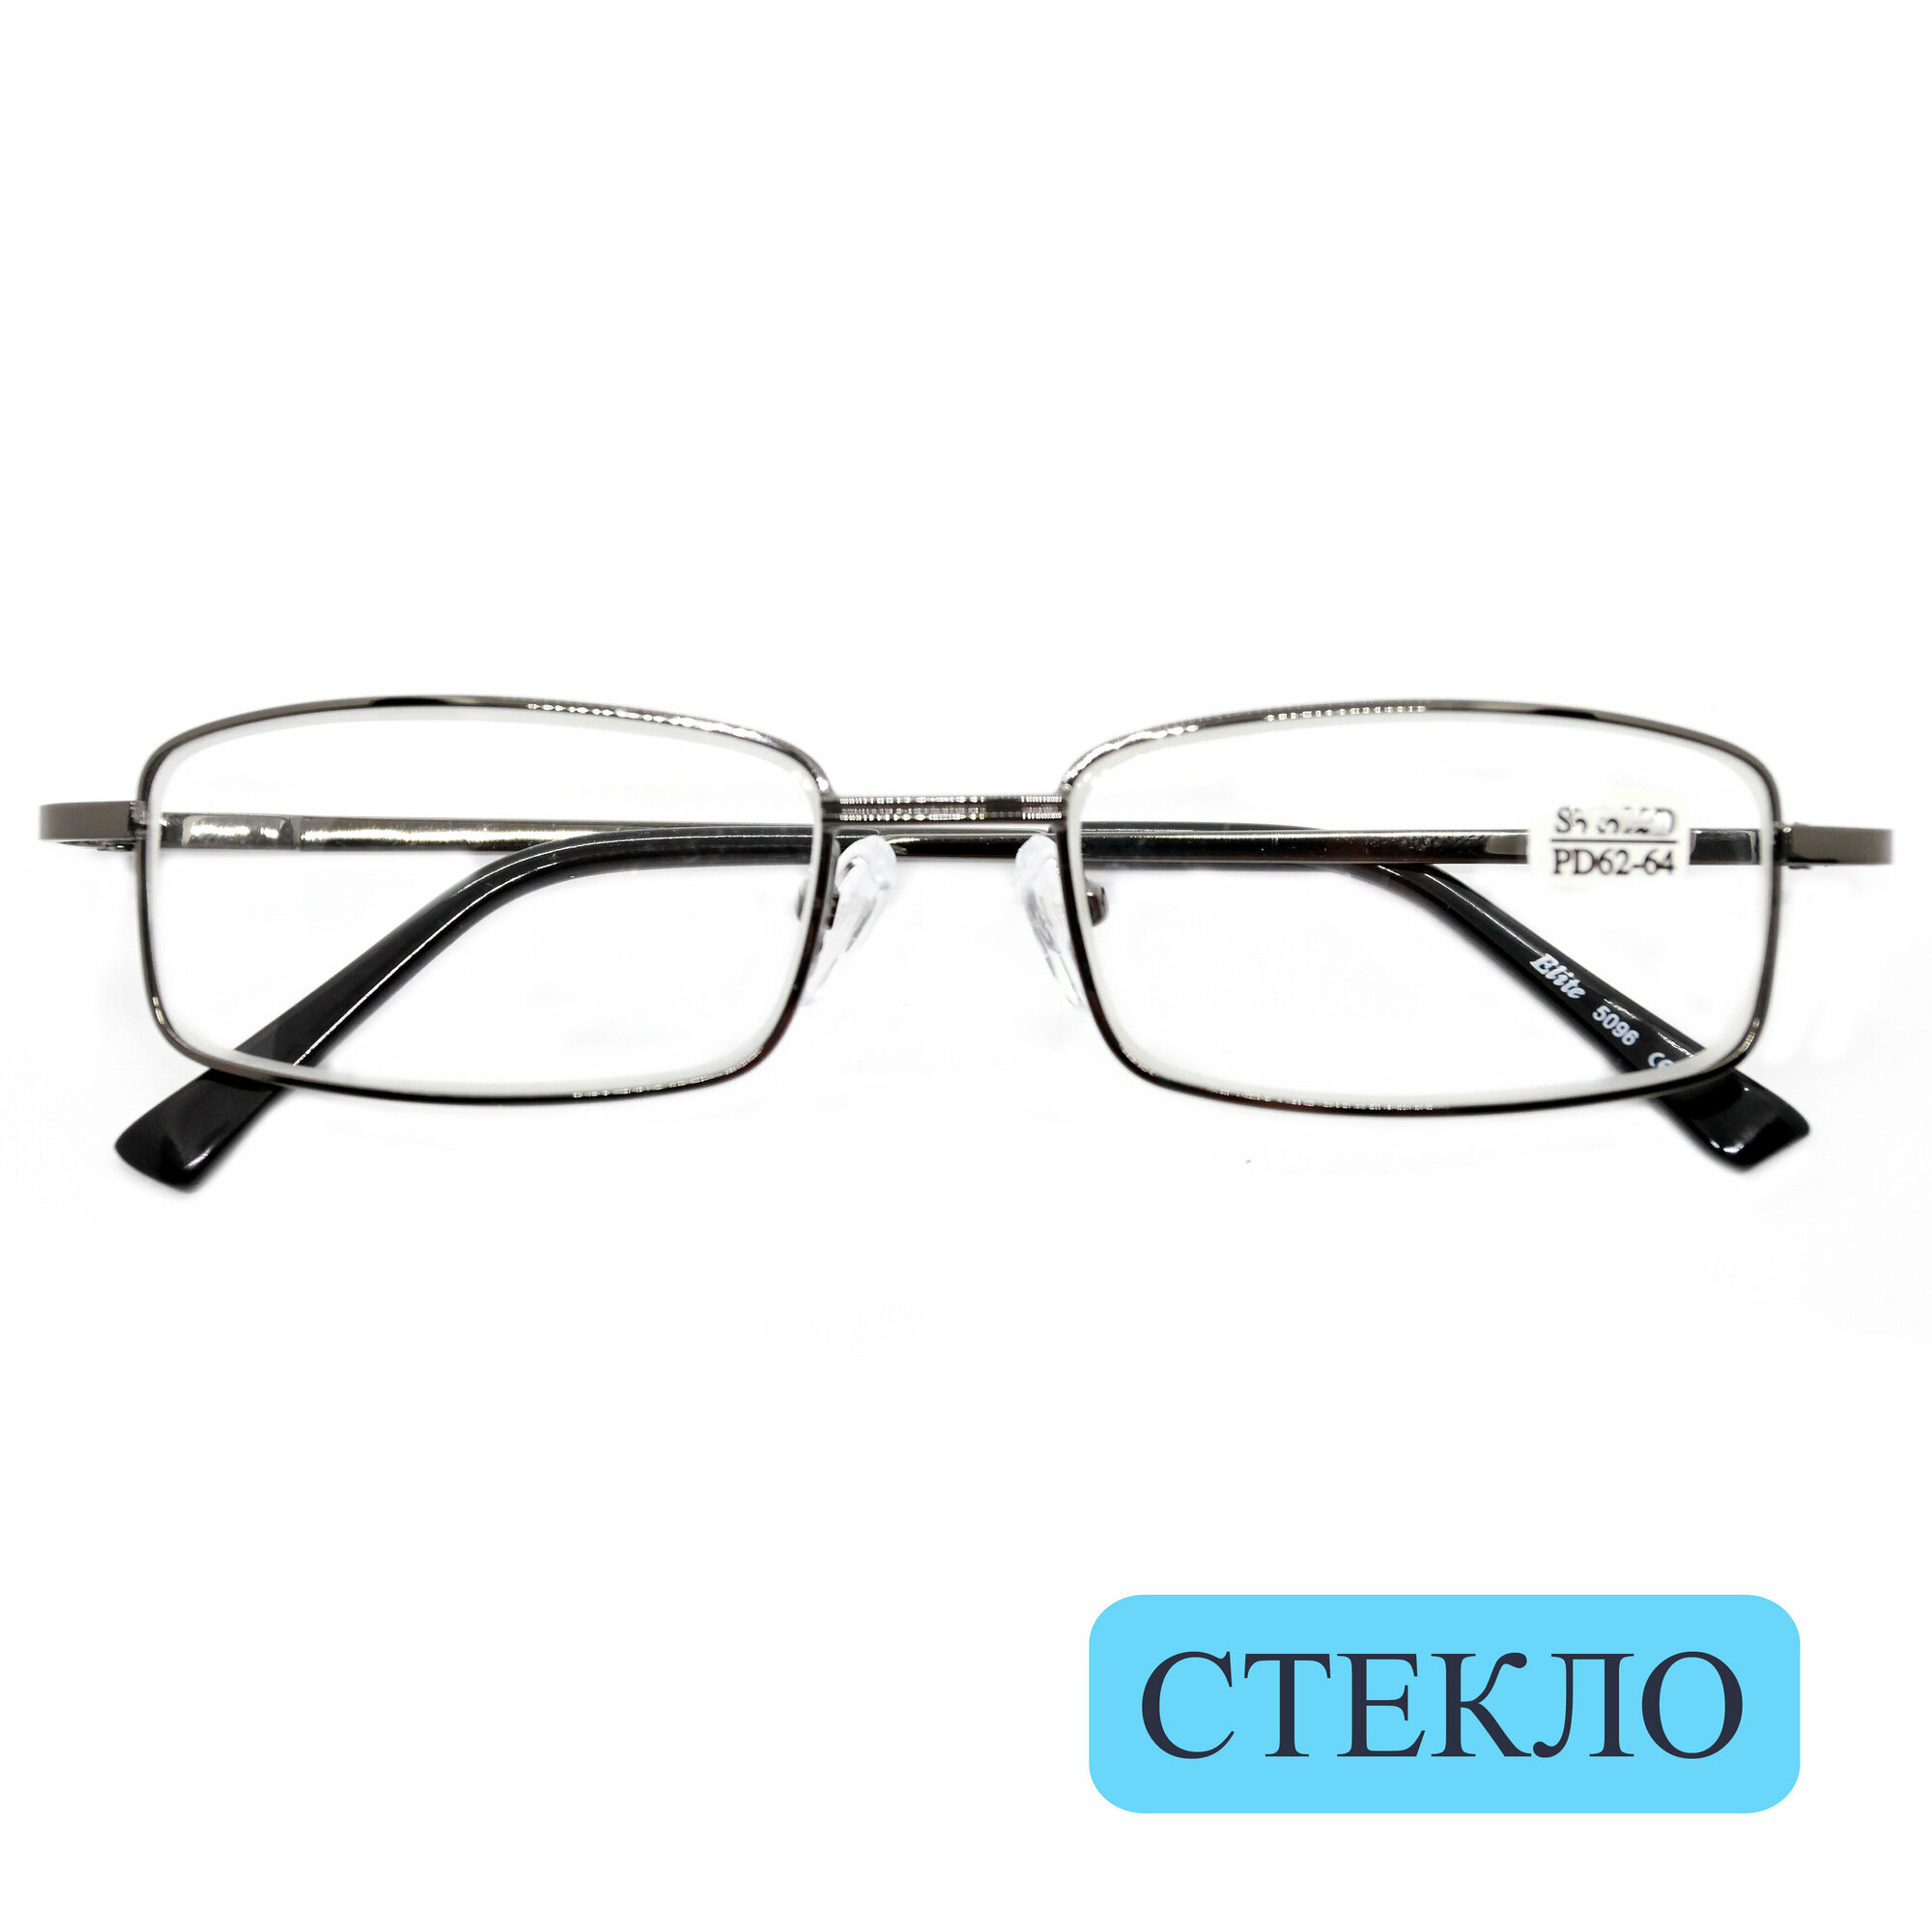 Коррегирующие очки для чтения стекло (+2.00) ELITE 5096, линза стекло, цвет серый, РЦ62-64, с салфеткой